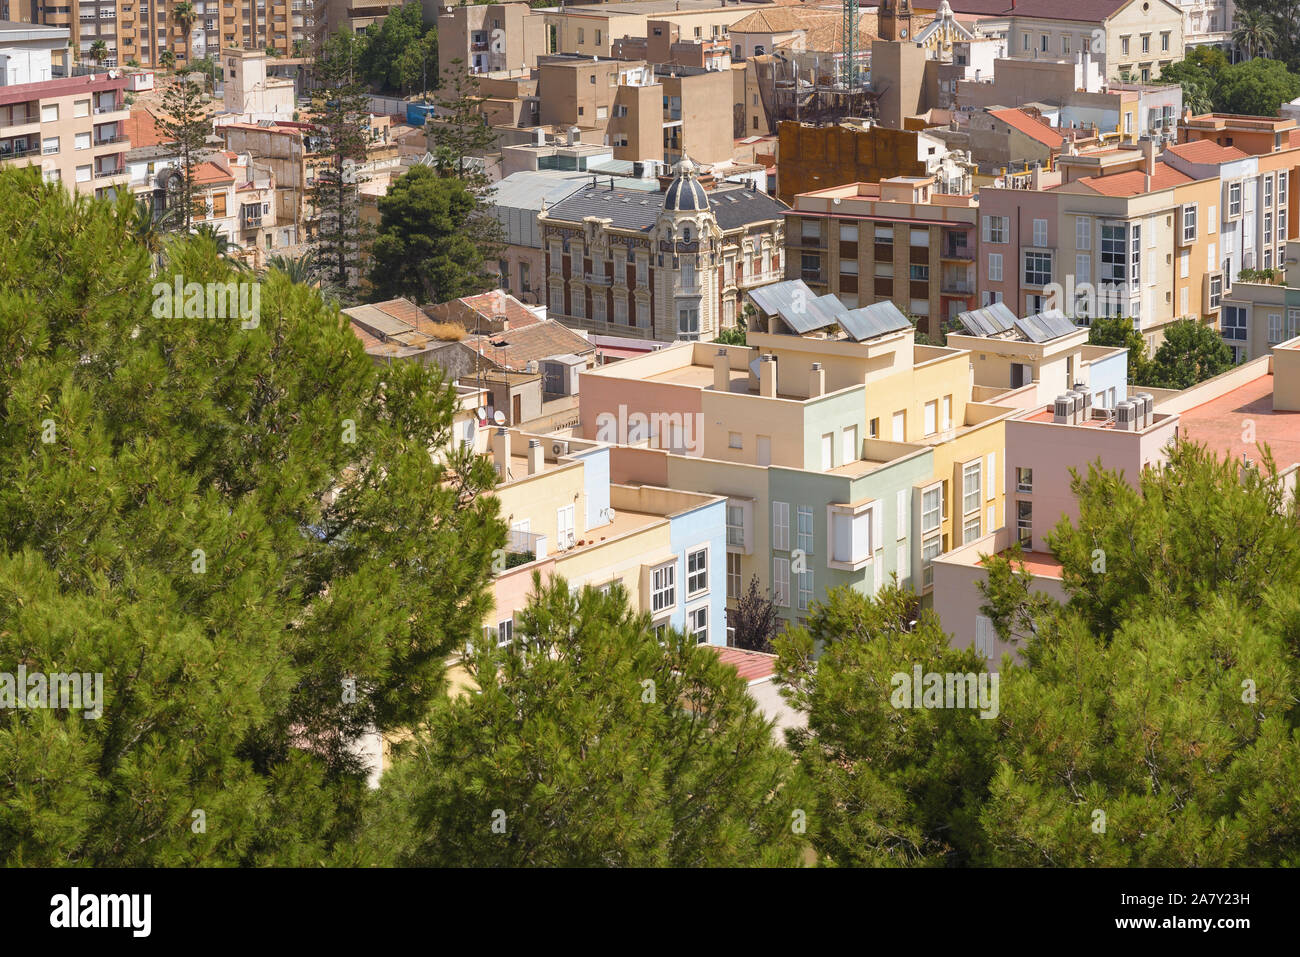 Cartegena rooftops in Spain Stock Photo